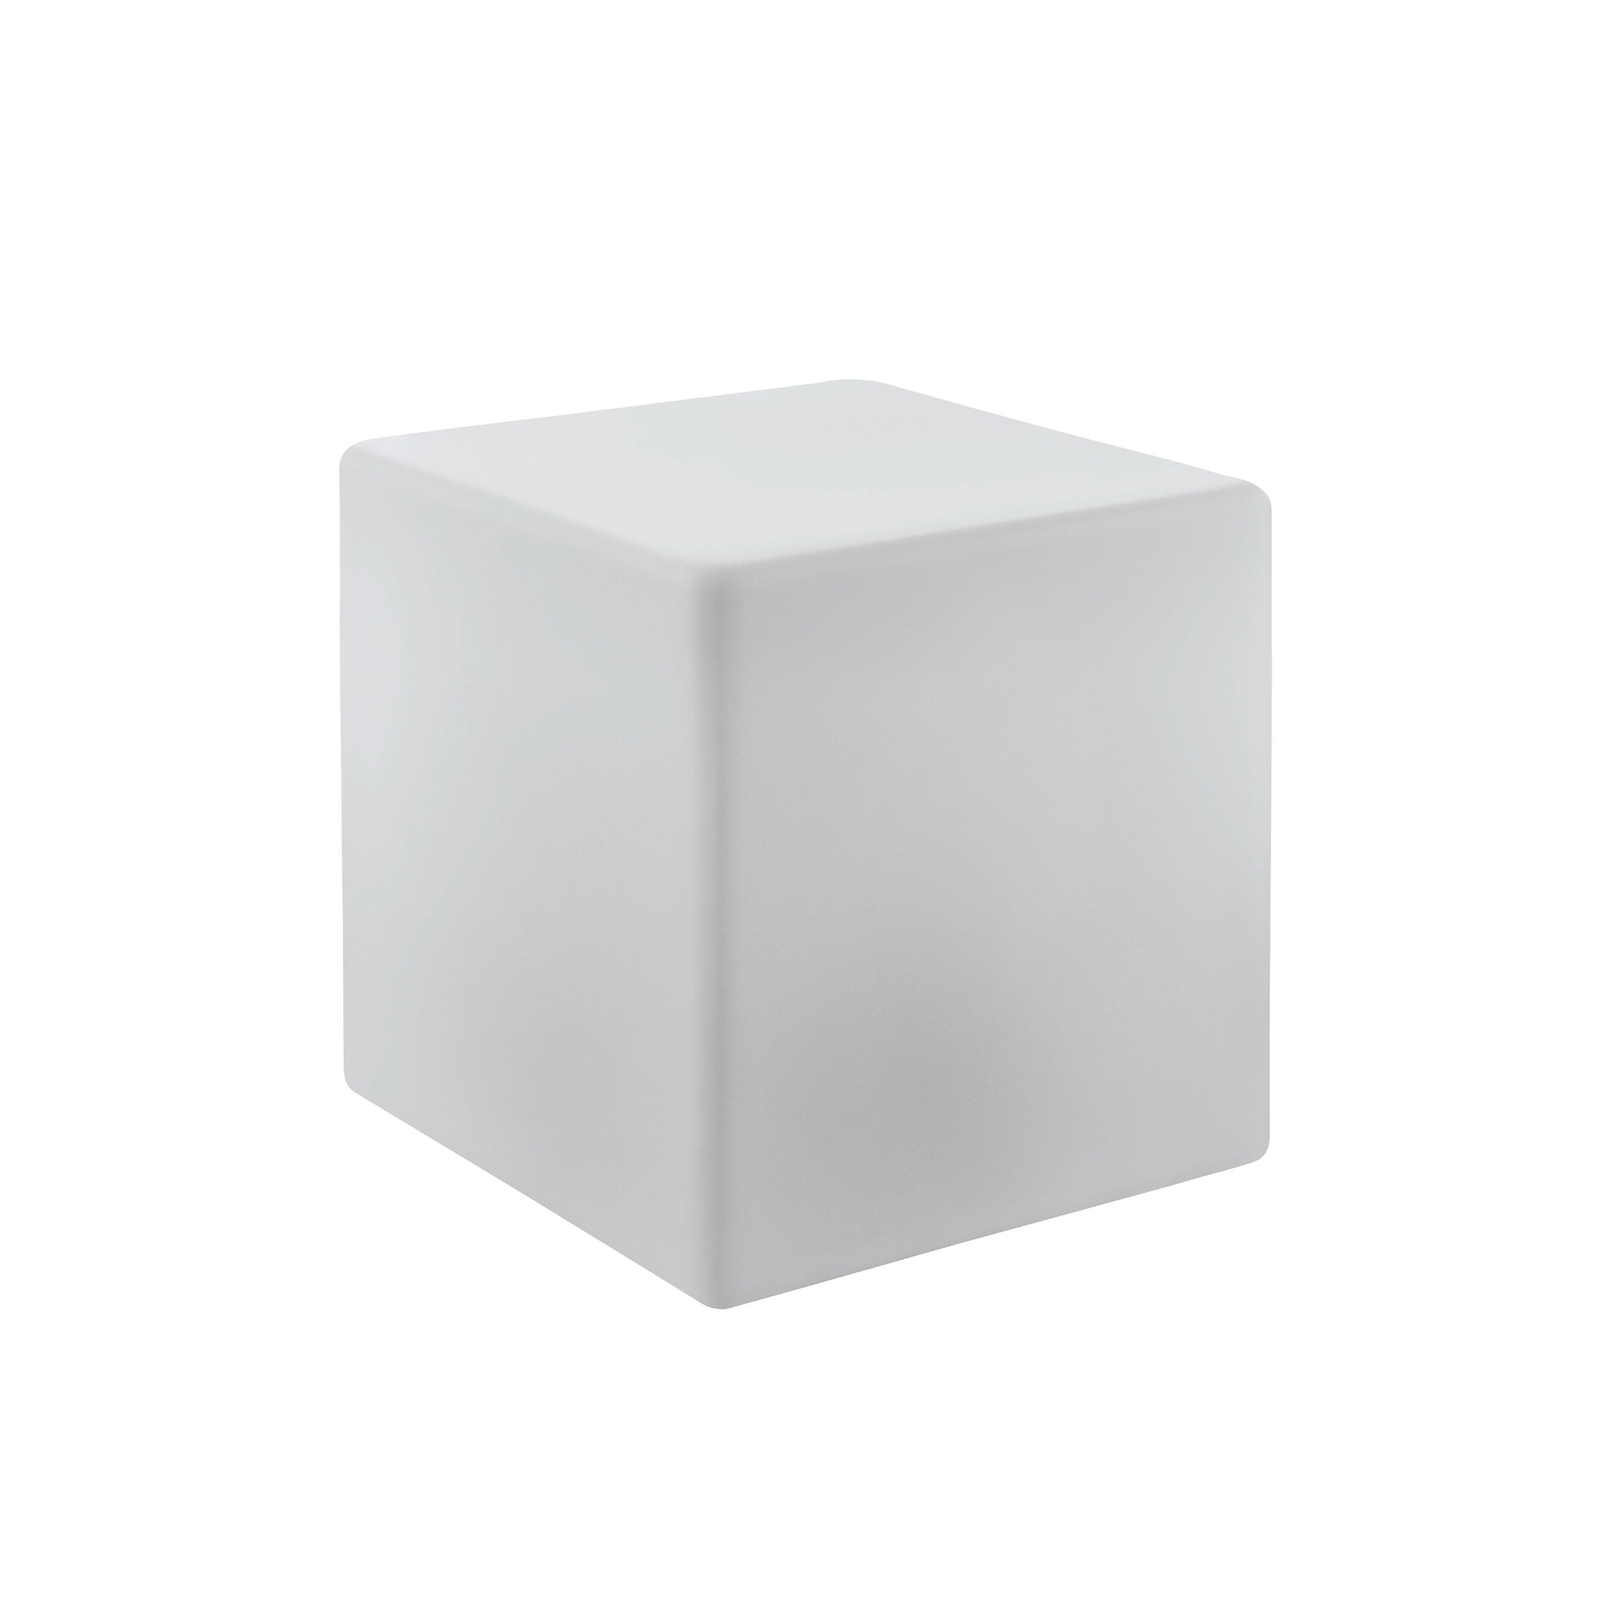 Ulkovalaisin Bottona cube E27 valkoinen, 30 x 30cm